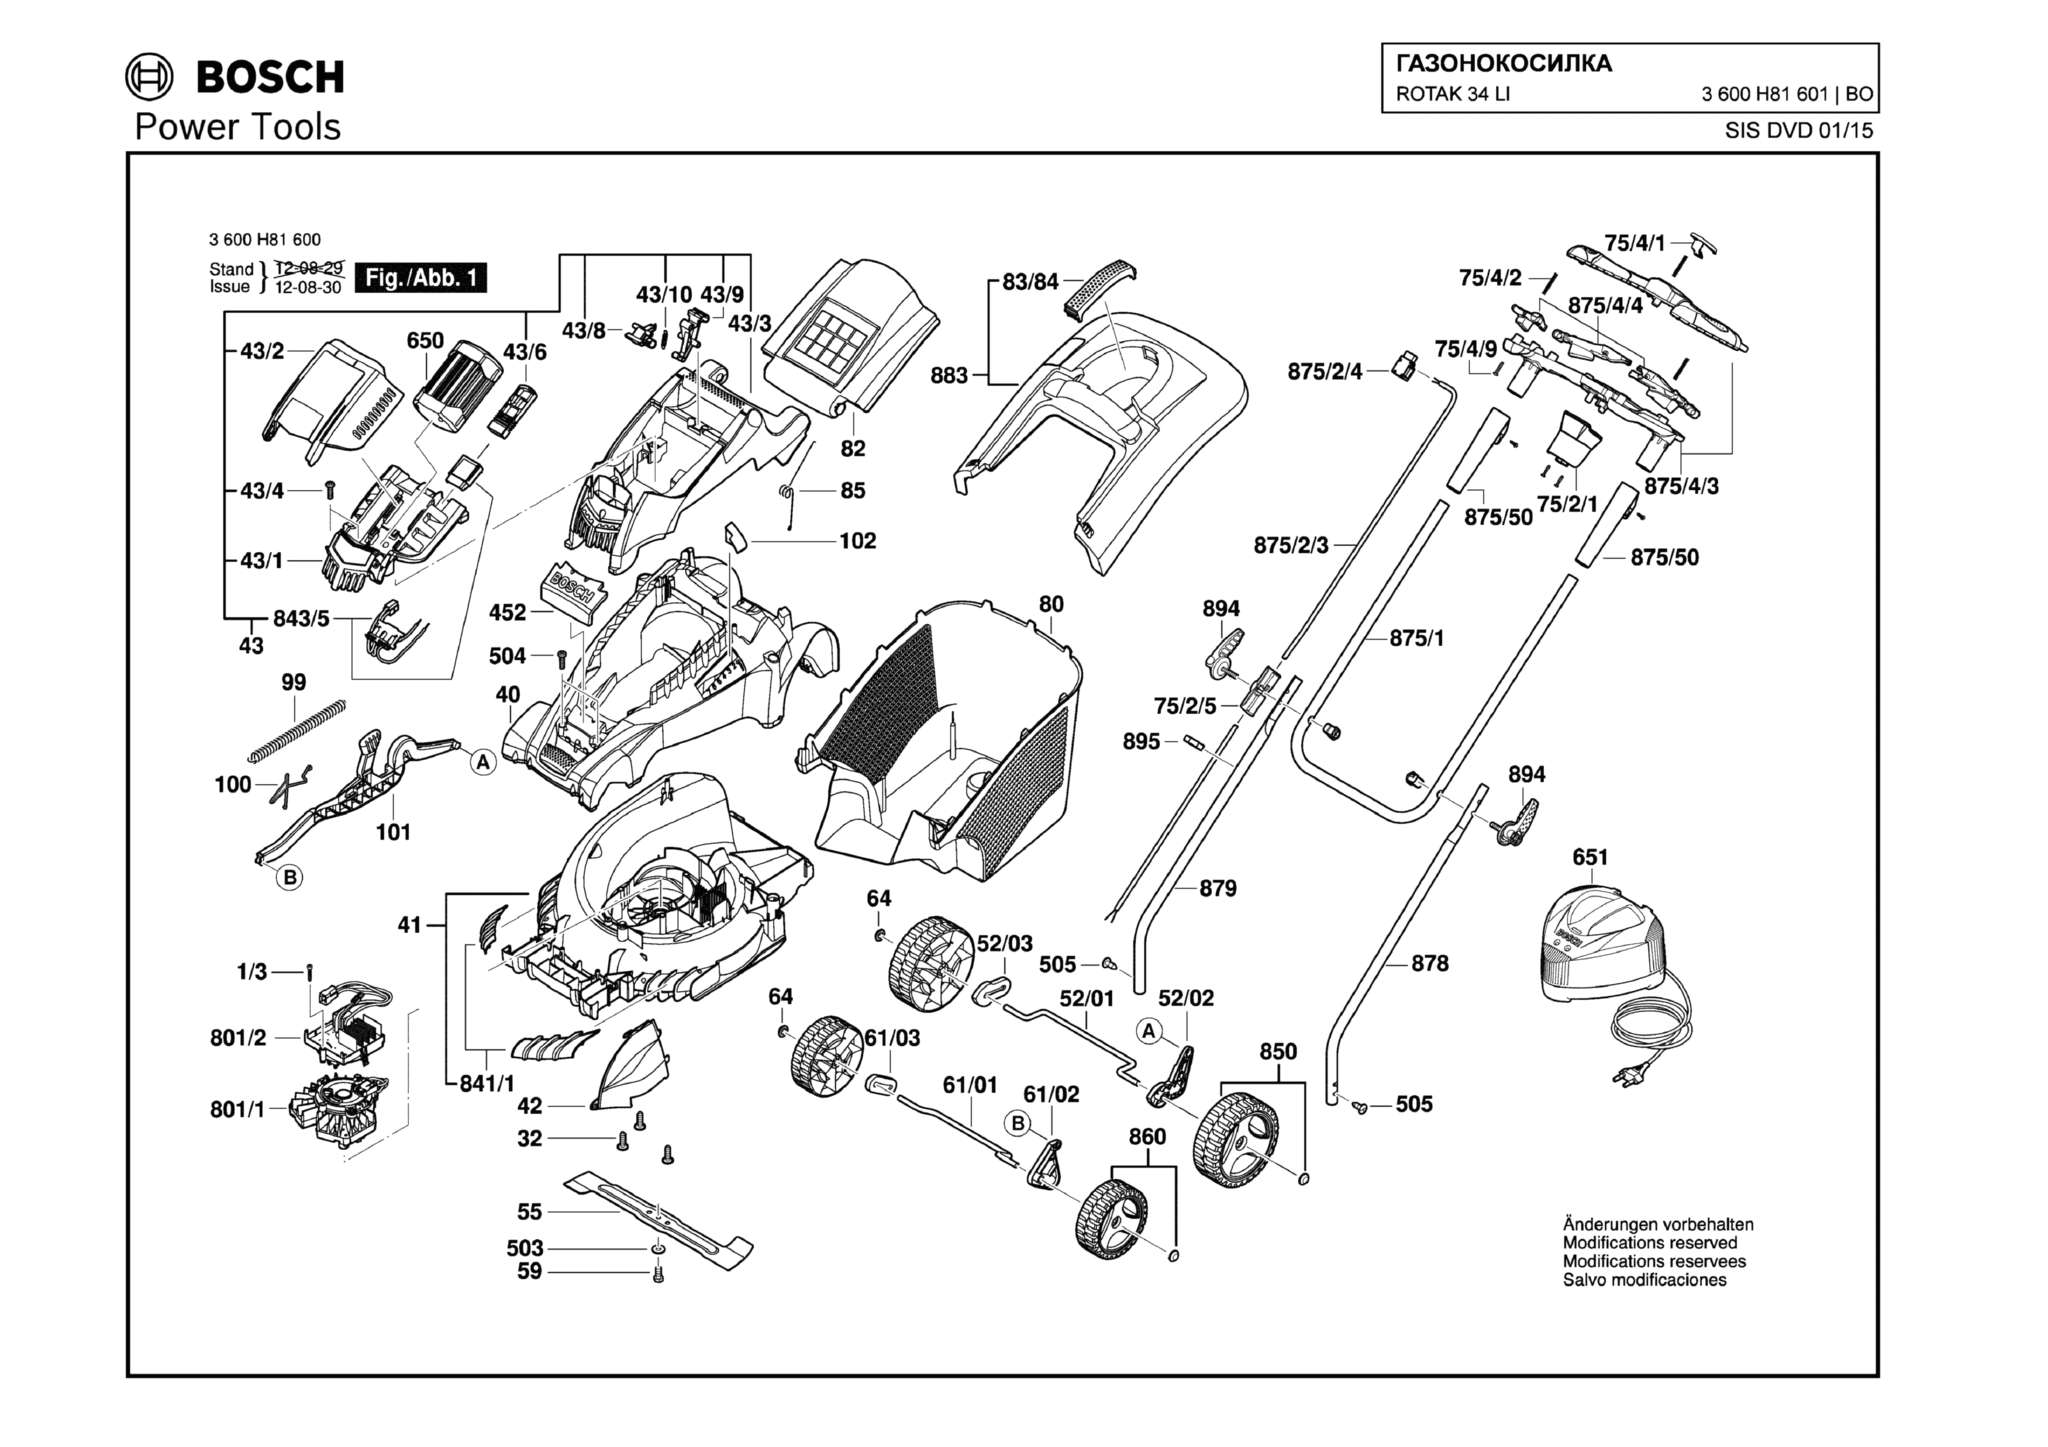 Запчасти, схема и деталировка Bosch ROTAK 34 LI (ERGOFLEX) (ТИП 3600H81601)